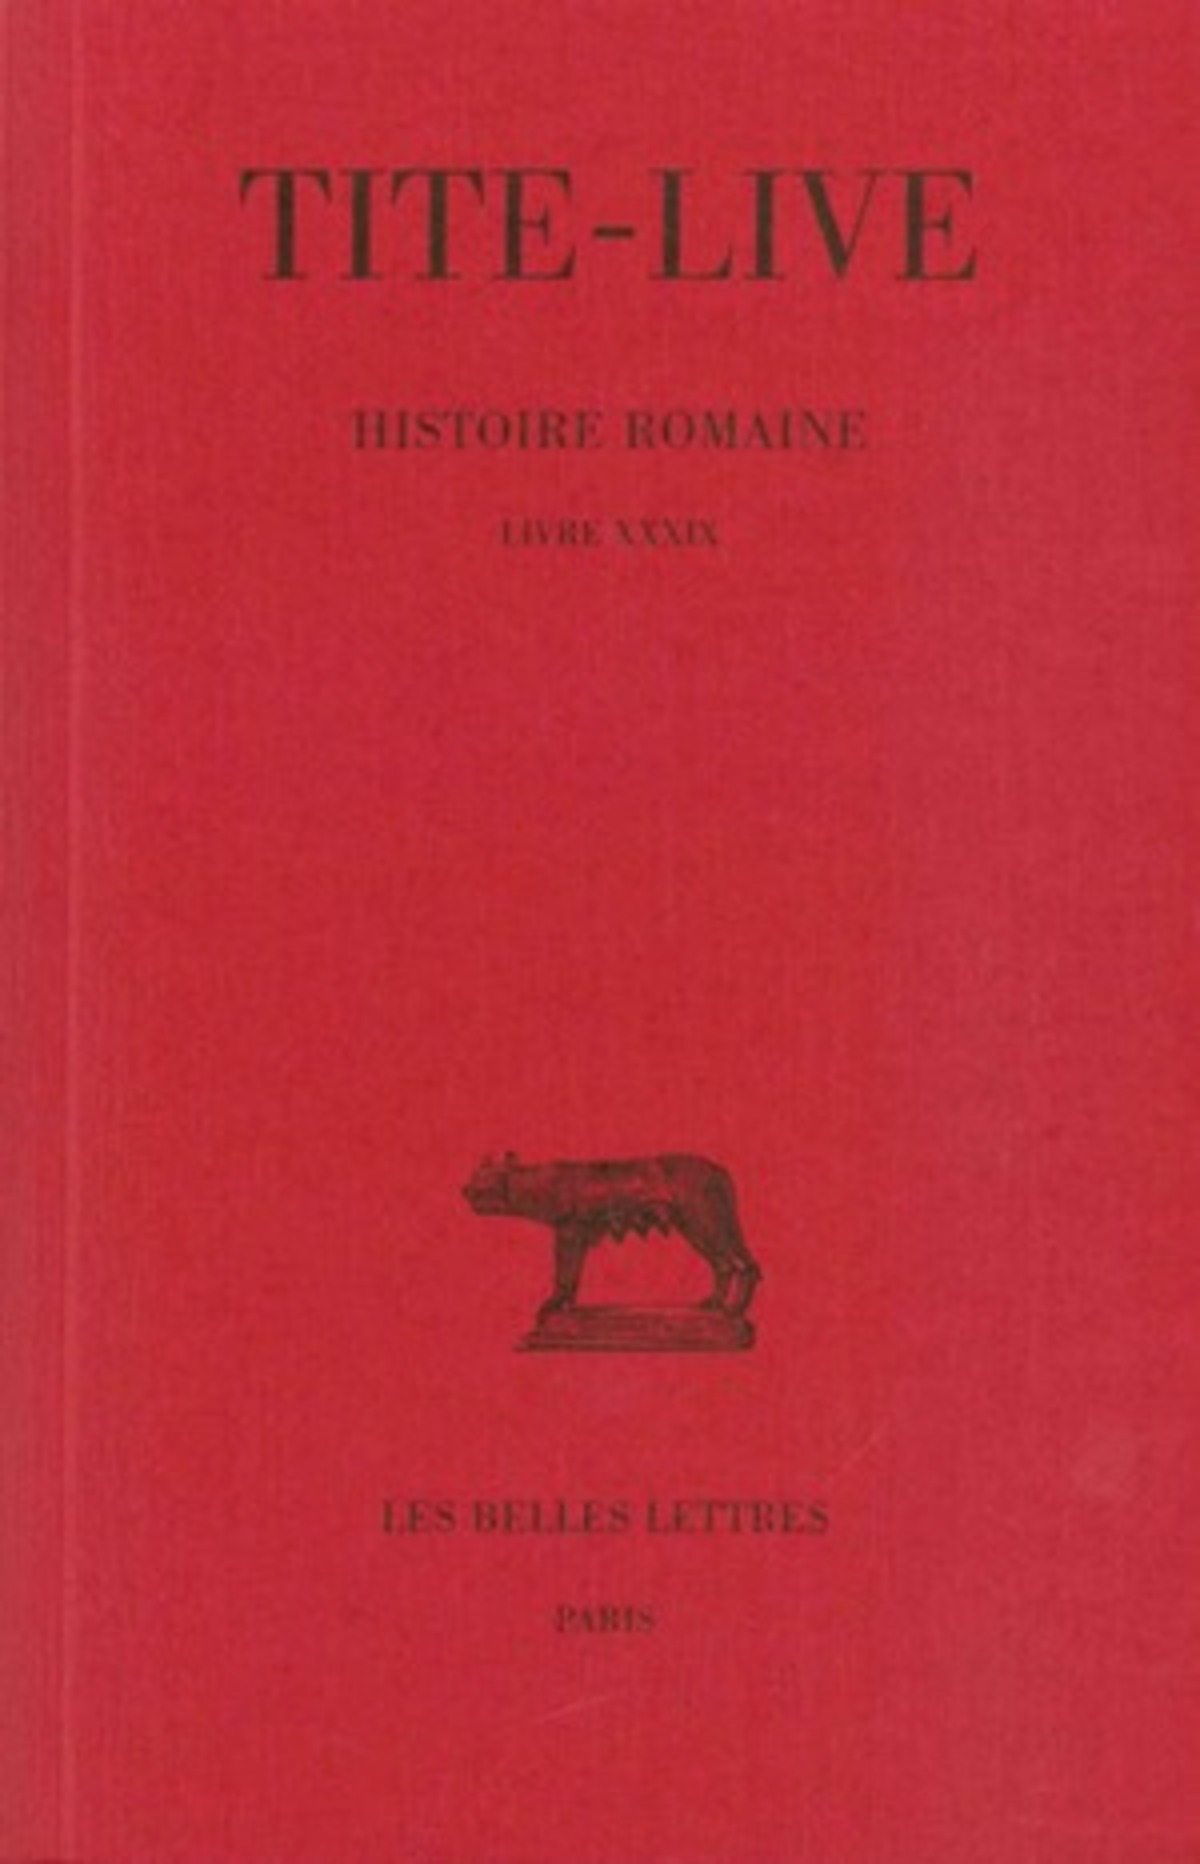 Histoire romaine. Tome XXIX : Livre XXXIX